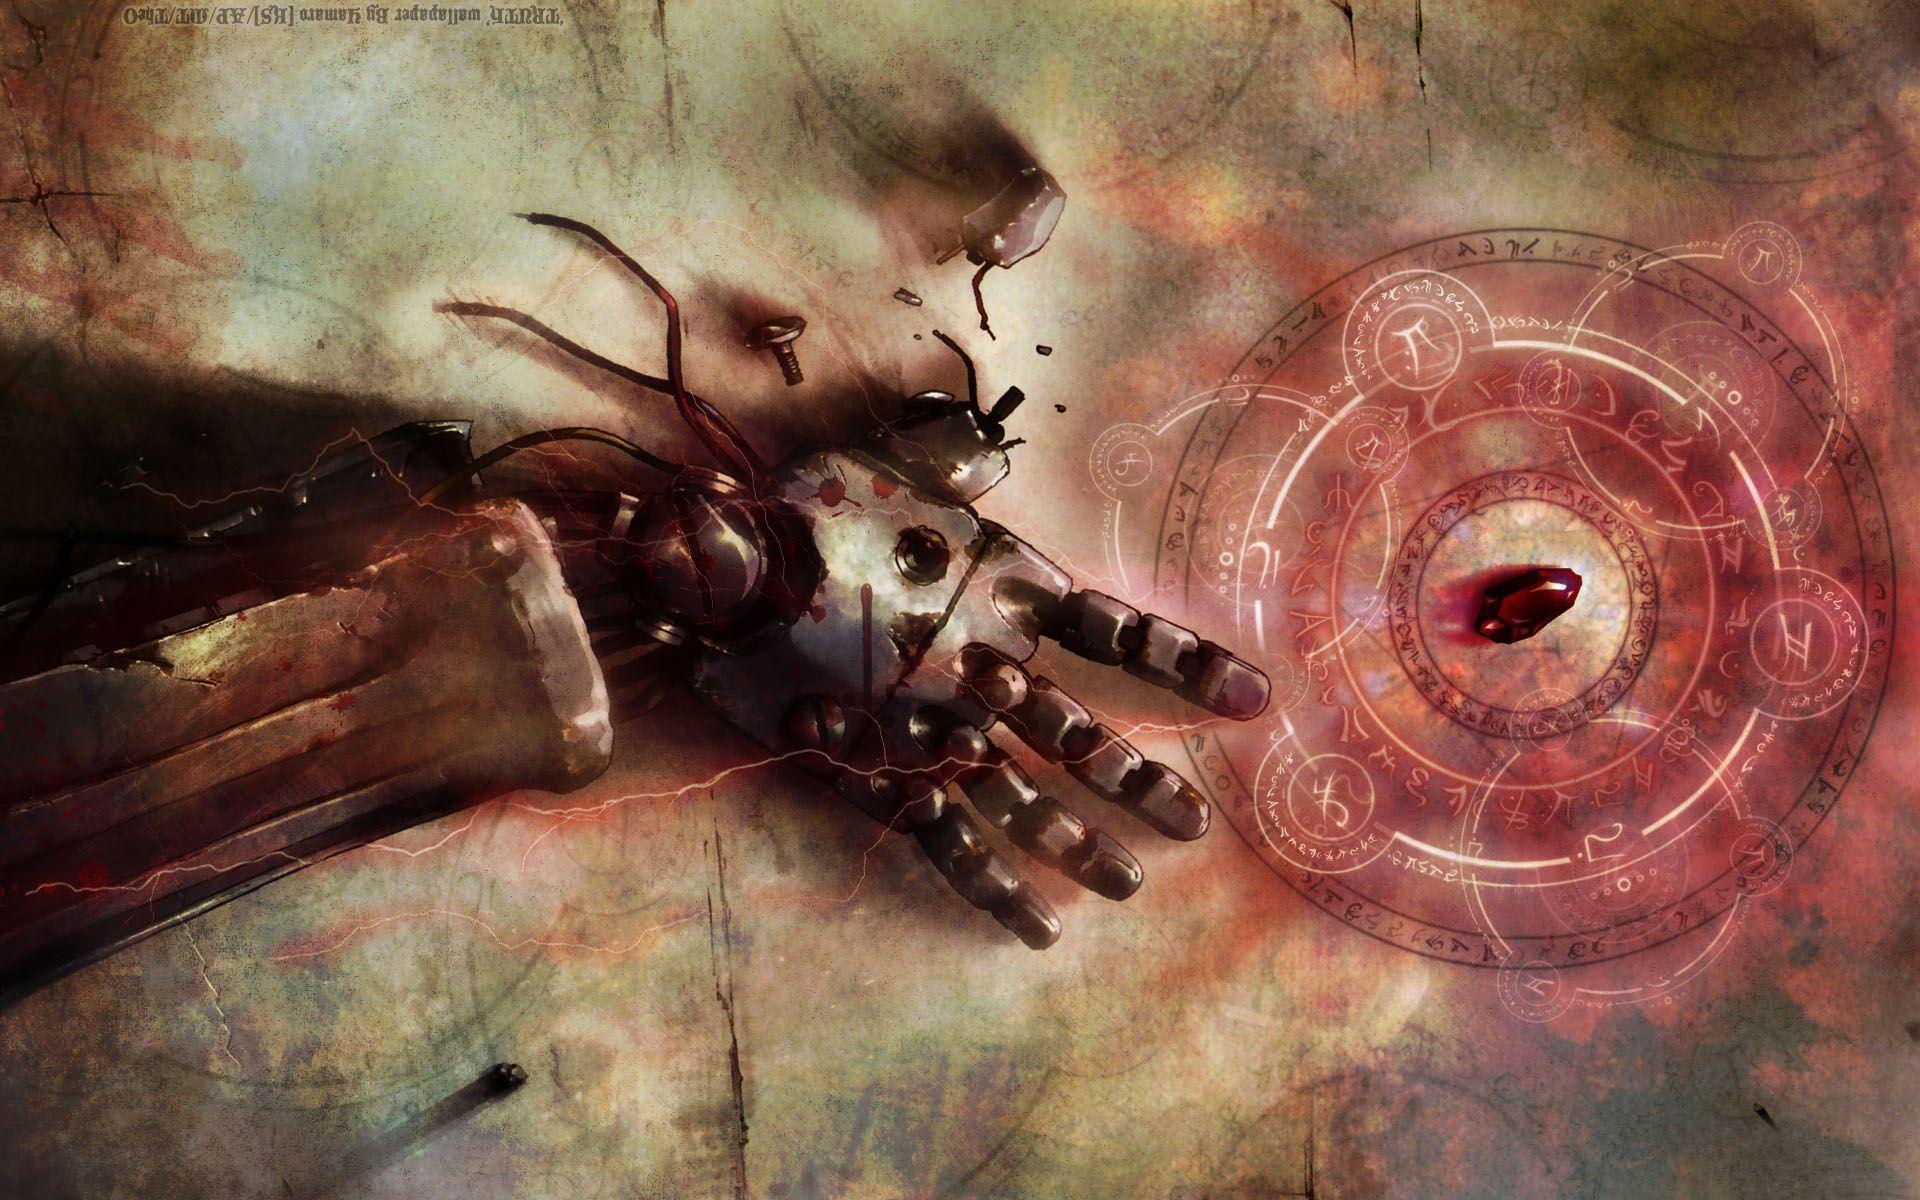 Download Fullmetal Alchemist Brotherhood Wallpaper